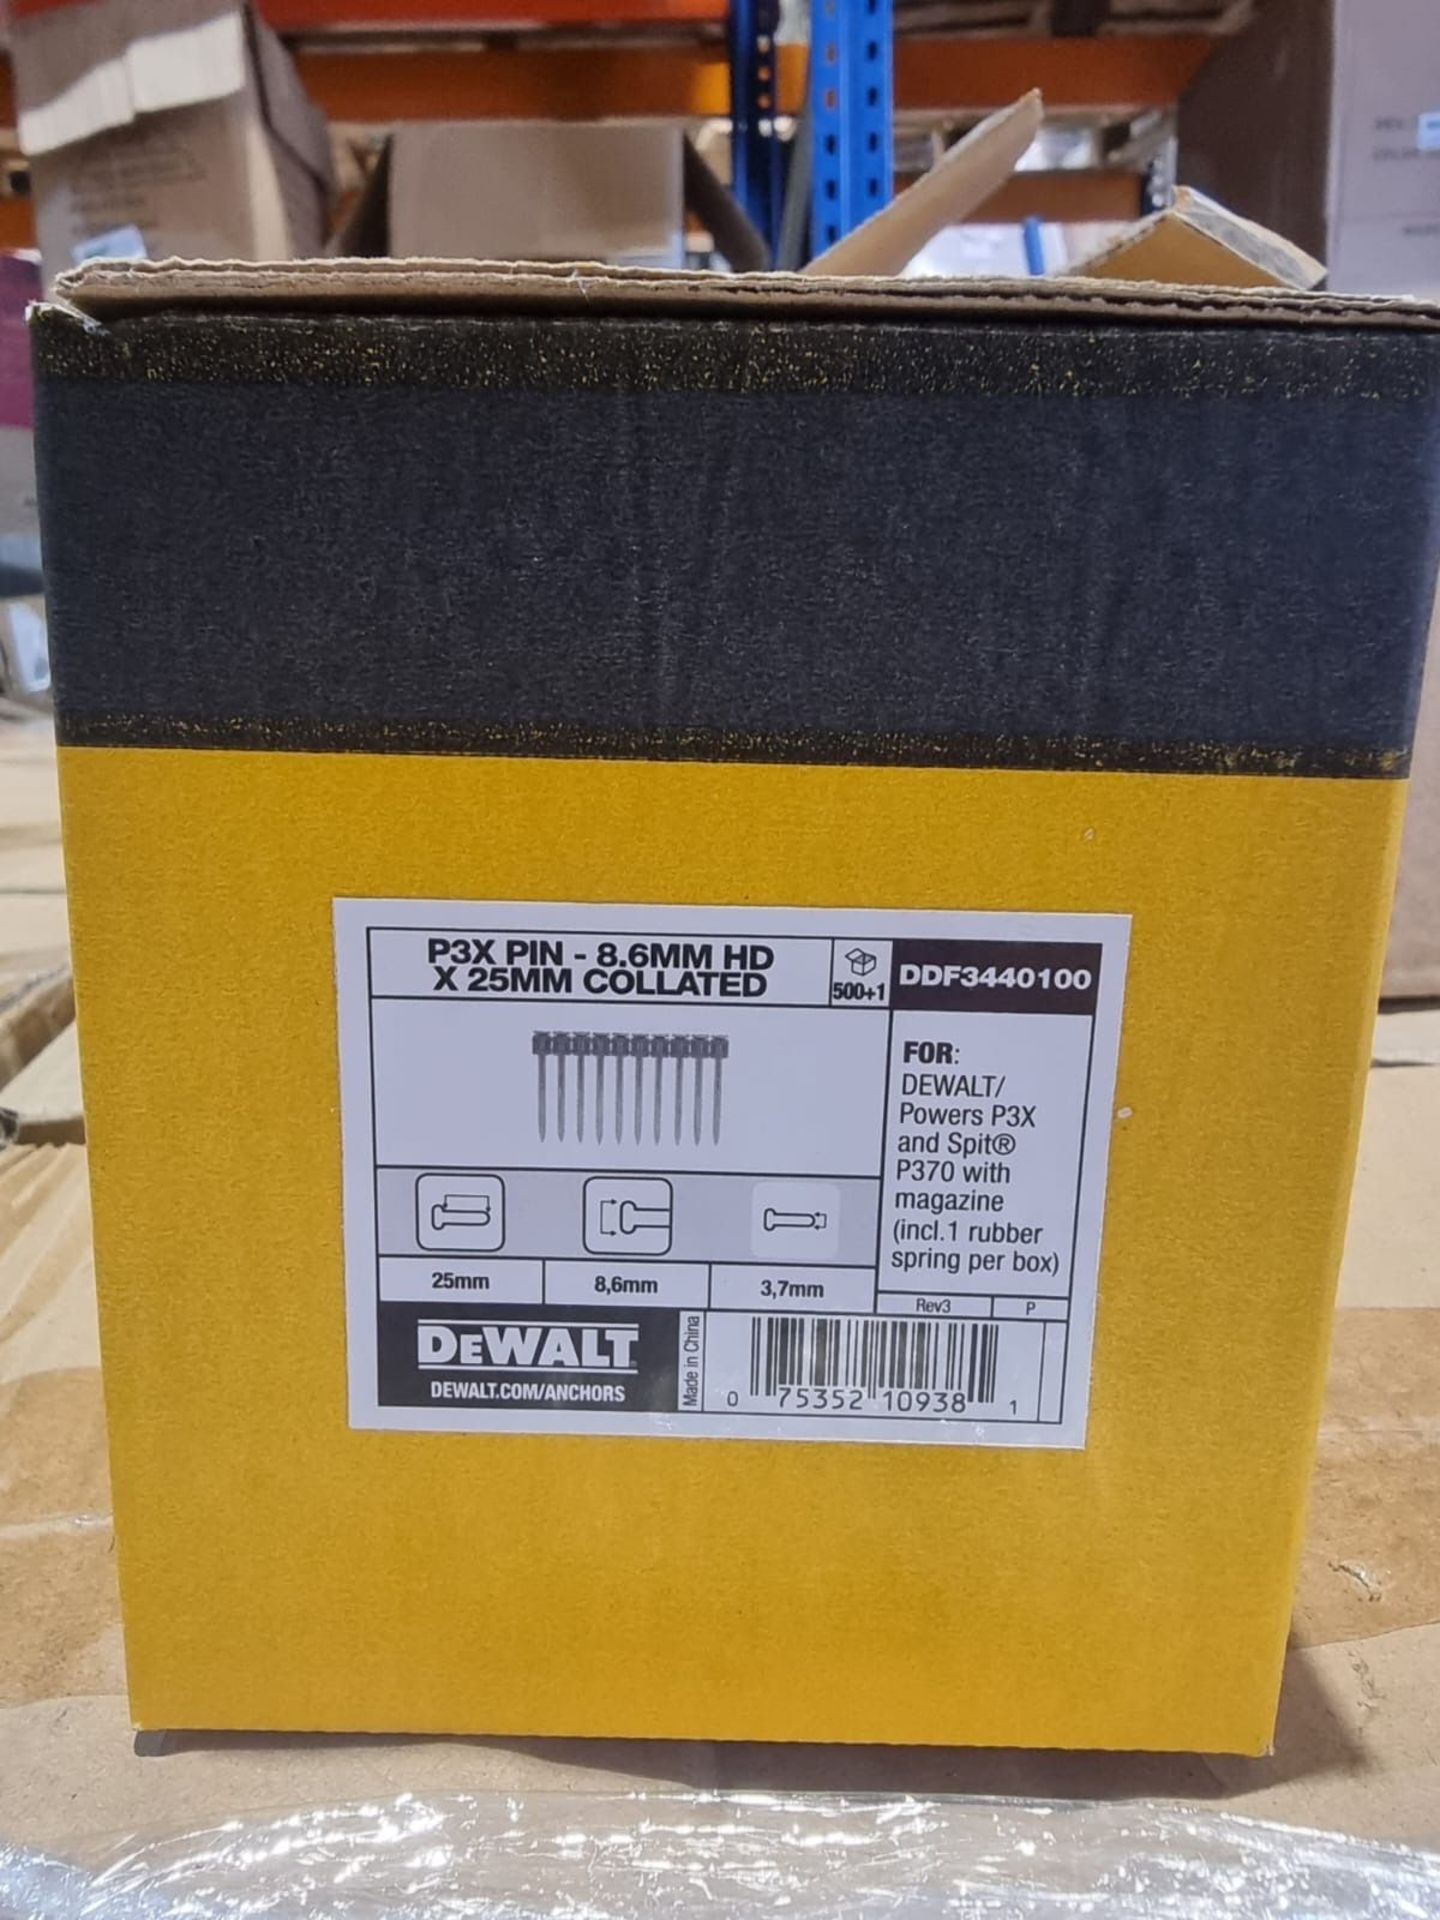 Trade Lot 100 x New Boxes of 500 Dewalt 3.7mm x 25mm HD P3X Pins Collated - DDF3440100. RRP £44.50 - Bild 2 aus 3